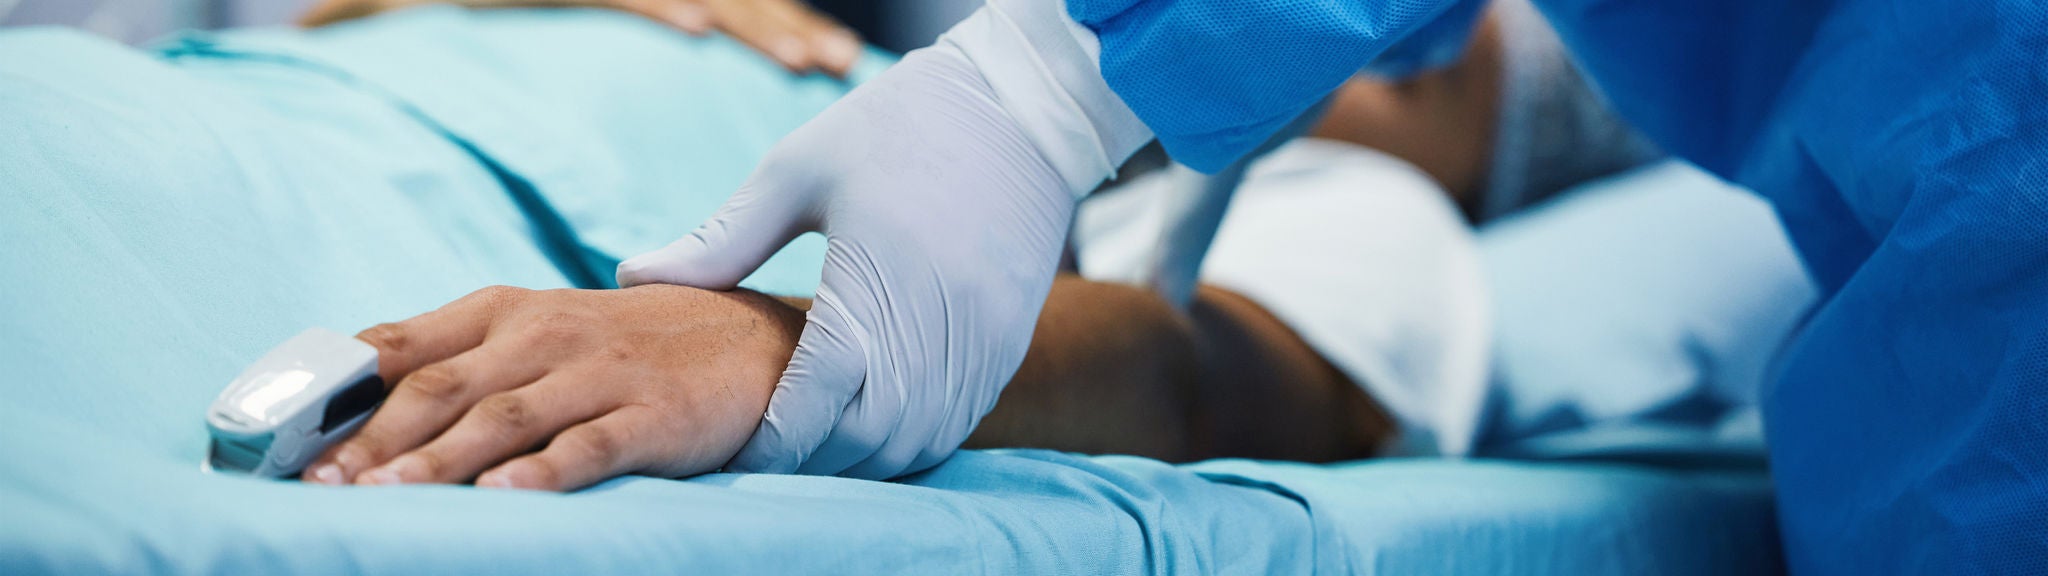 Ein Arzt mit Handschuhen hält den Arm eines Patienten auf der Intensivstation.